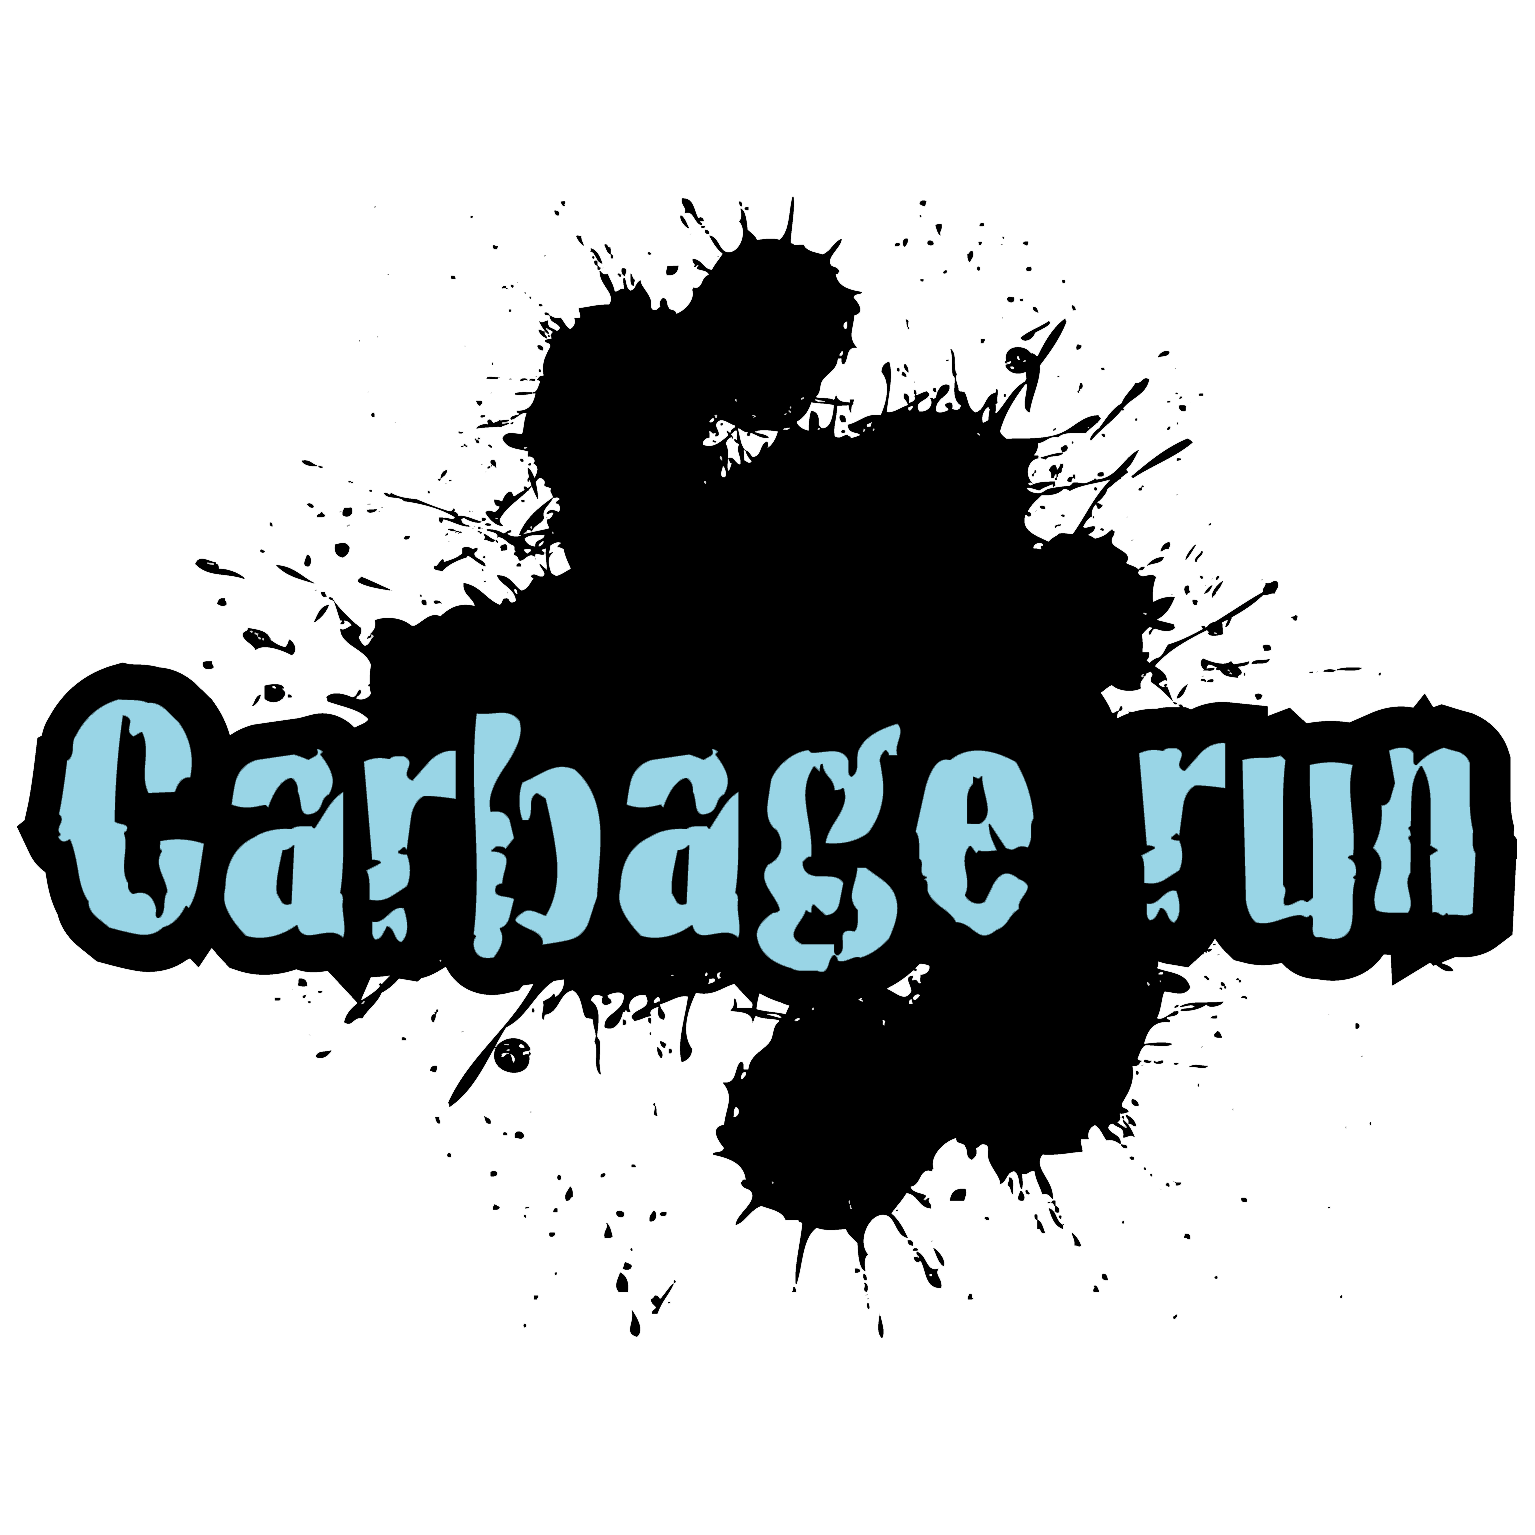 Carbage run